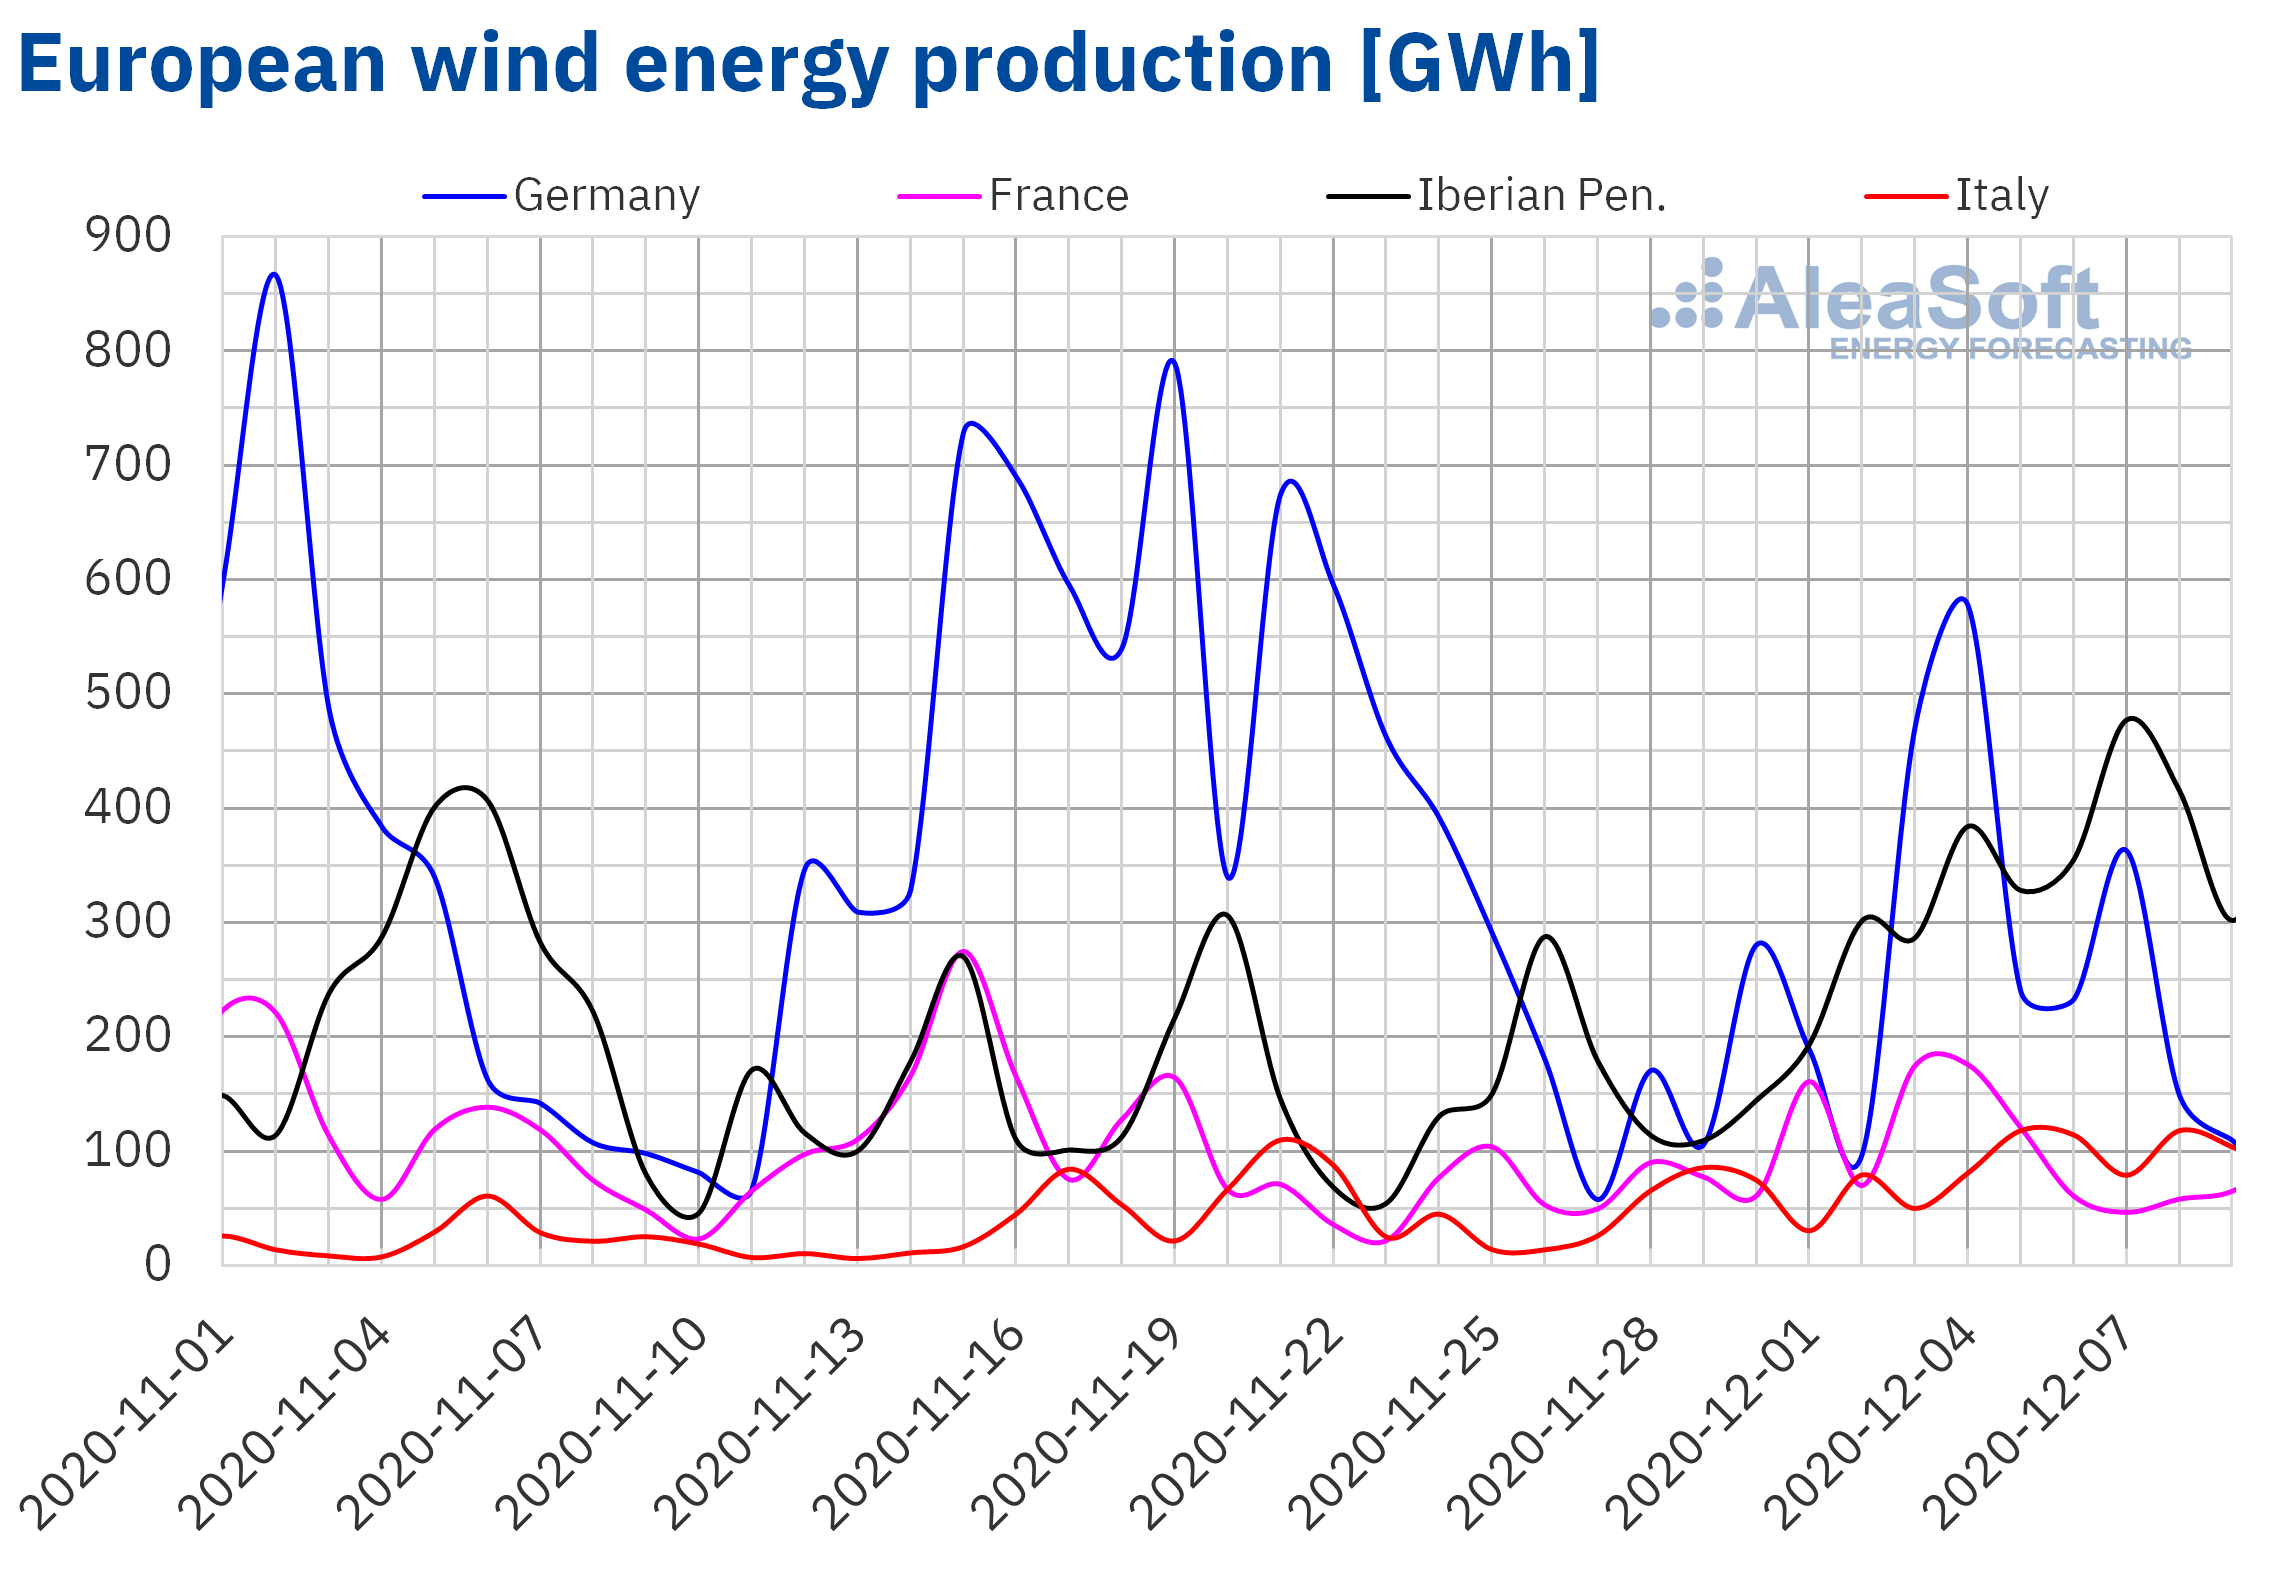 AleaSoft - Wind energy production of Europe